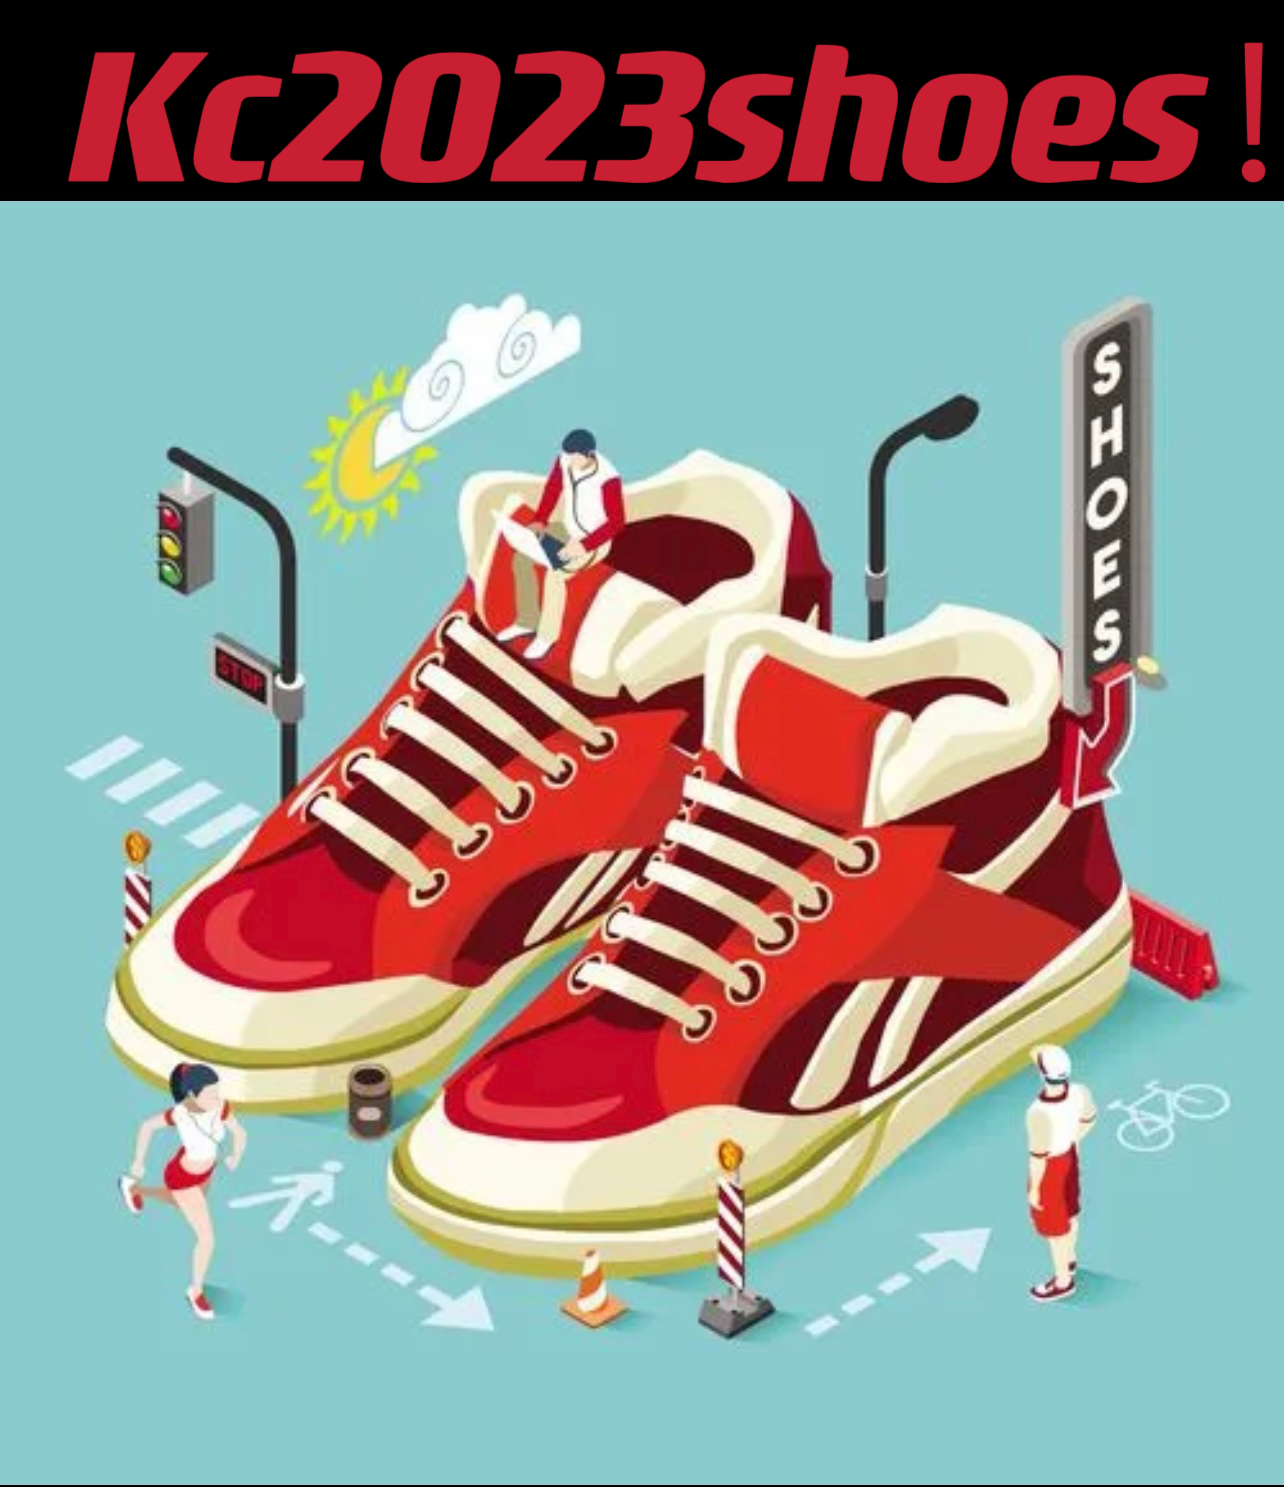 kc2023shoes store